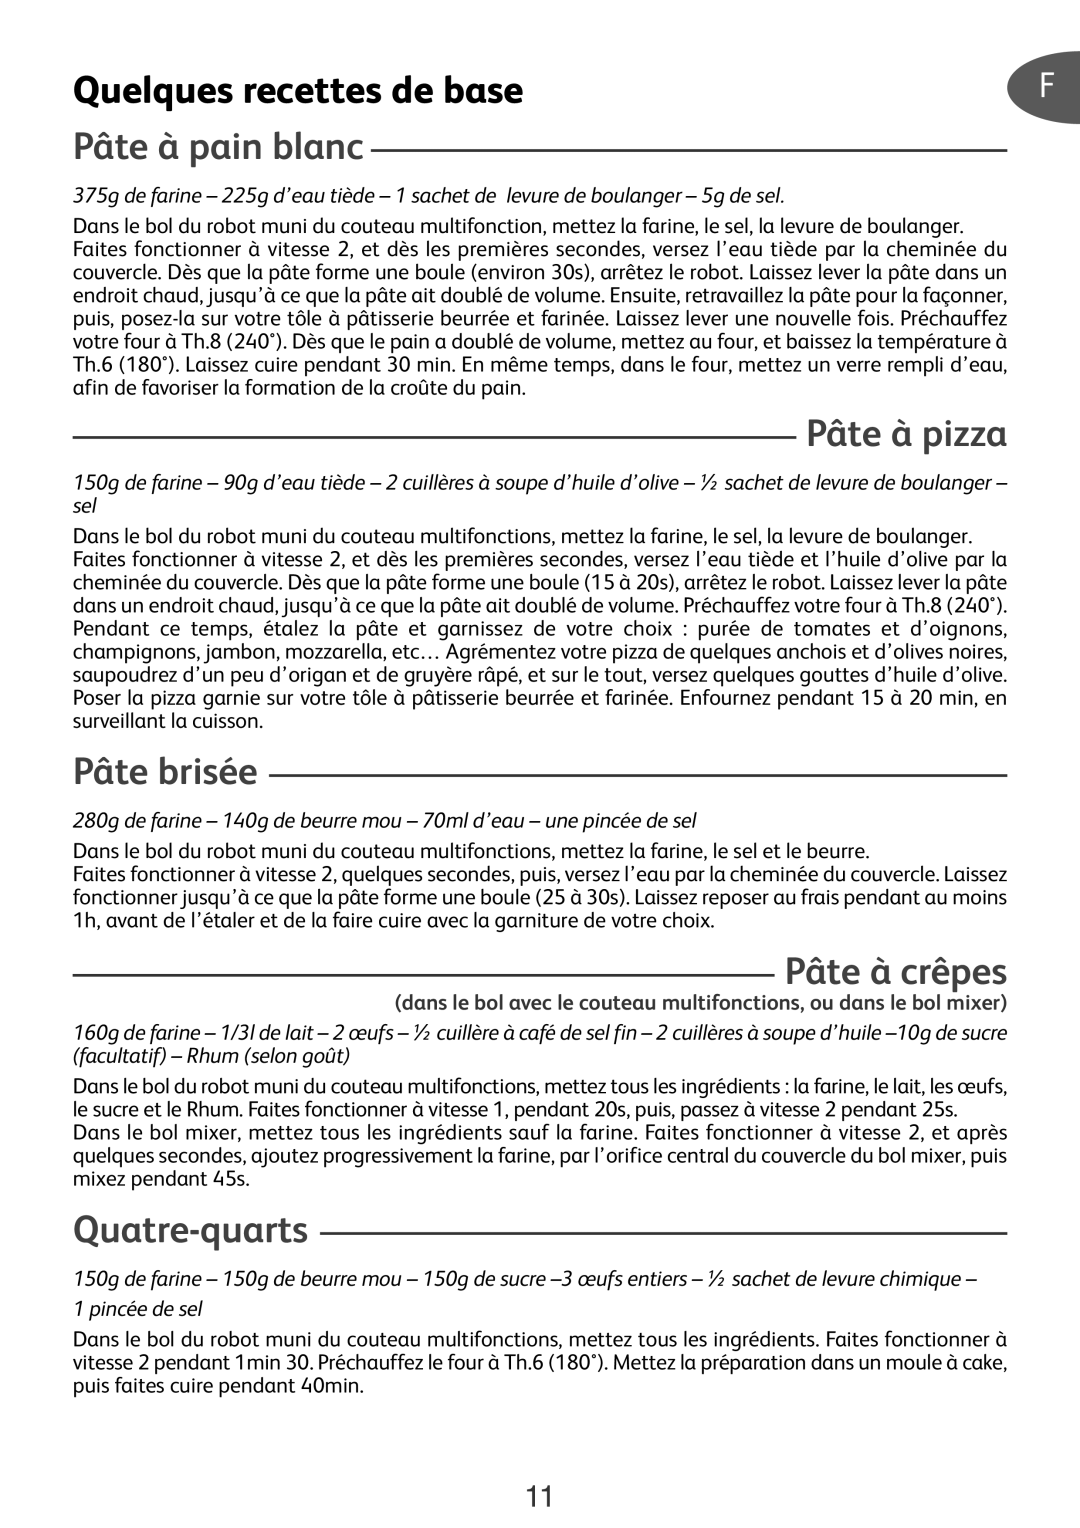 Tefal DO301EA2 manual Quelques recettes de base, Pâte à pain blanc, Pâte à pizza, Pâte brisée, Pâte à crêpes, Quatre-quarts 